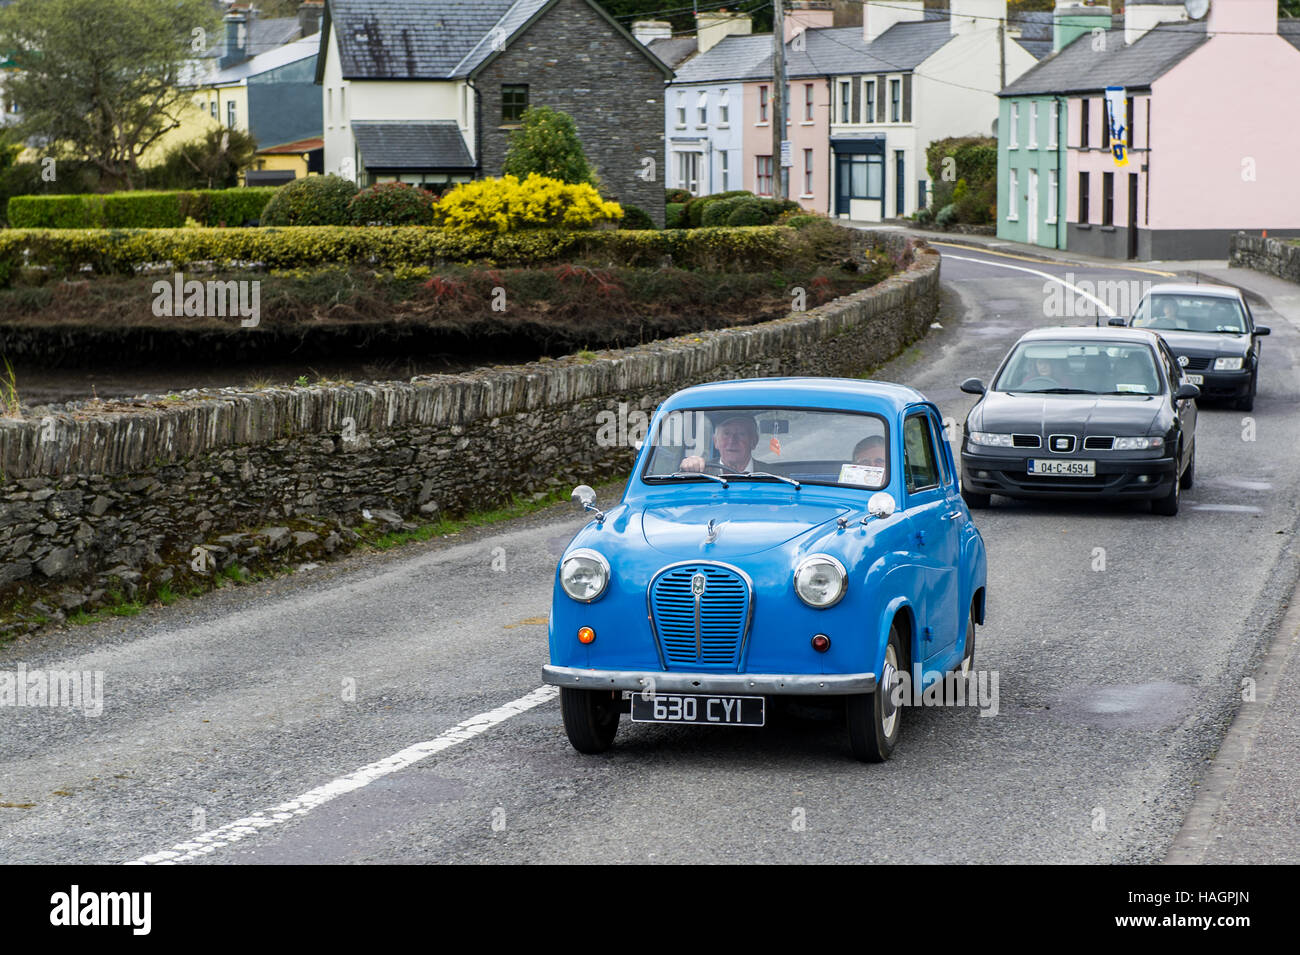 Une vieille voiture bleue d'Austin traverse le pont de Ballydehob, à West Cork, en Irlande, suivie de voitures modernes. Banque D'Images